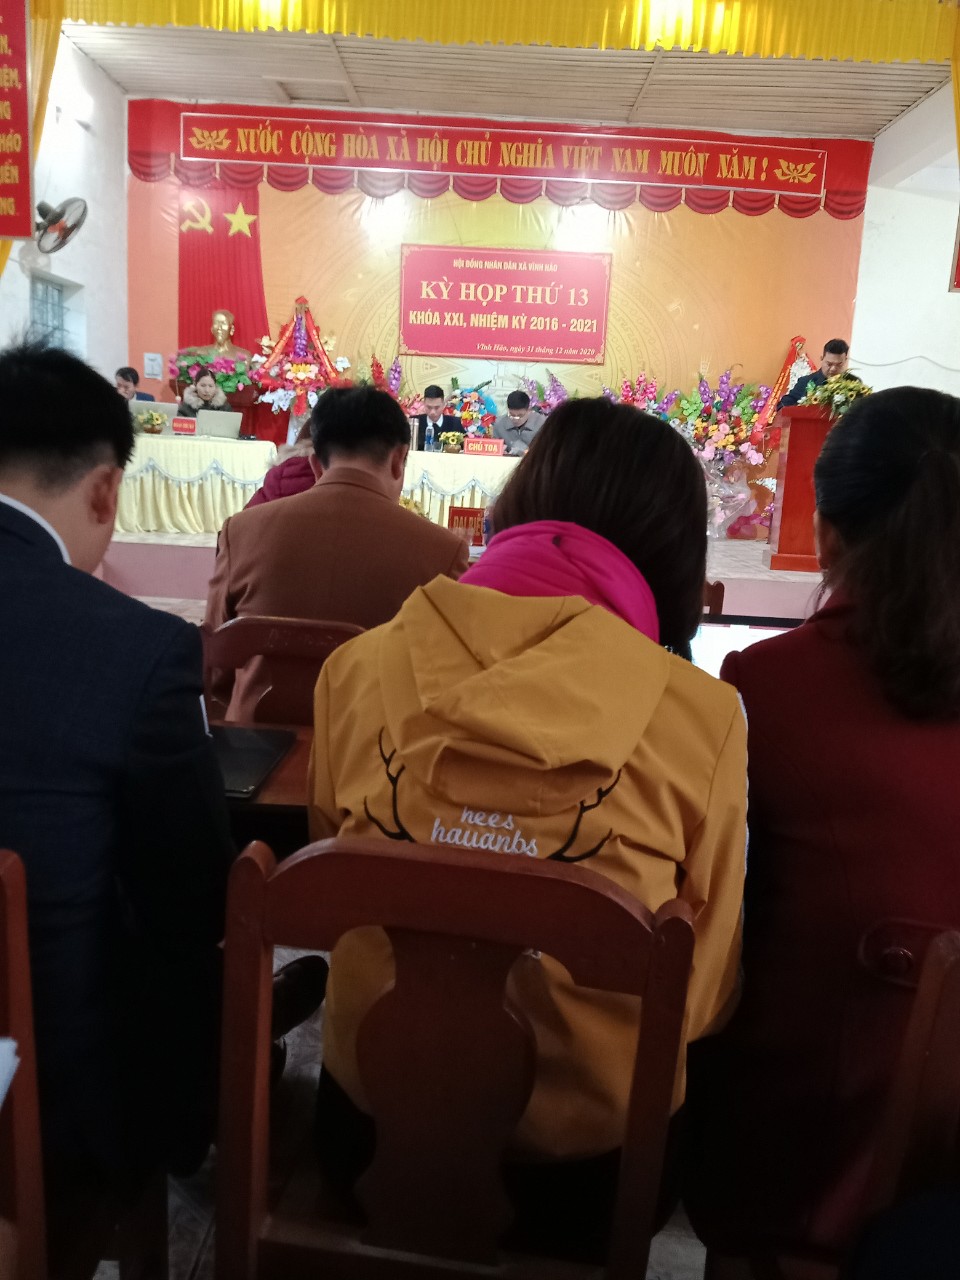 Hội đồng nhân dân xã Vĩnh Hảo tổ chức kỳ họp thứ 13 khóa XXI nhiệm kỳ 2016 -2021